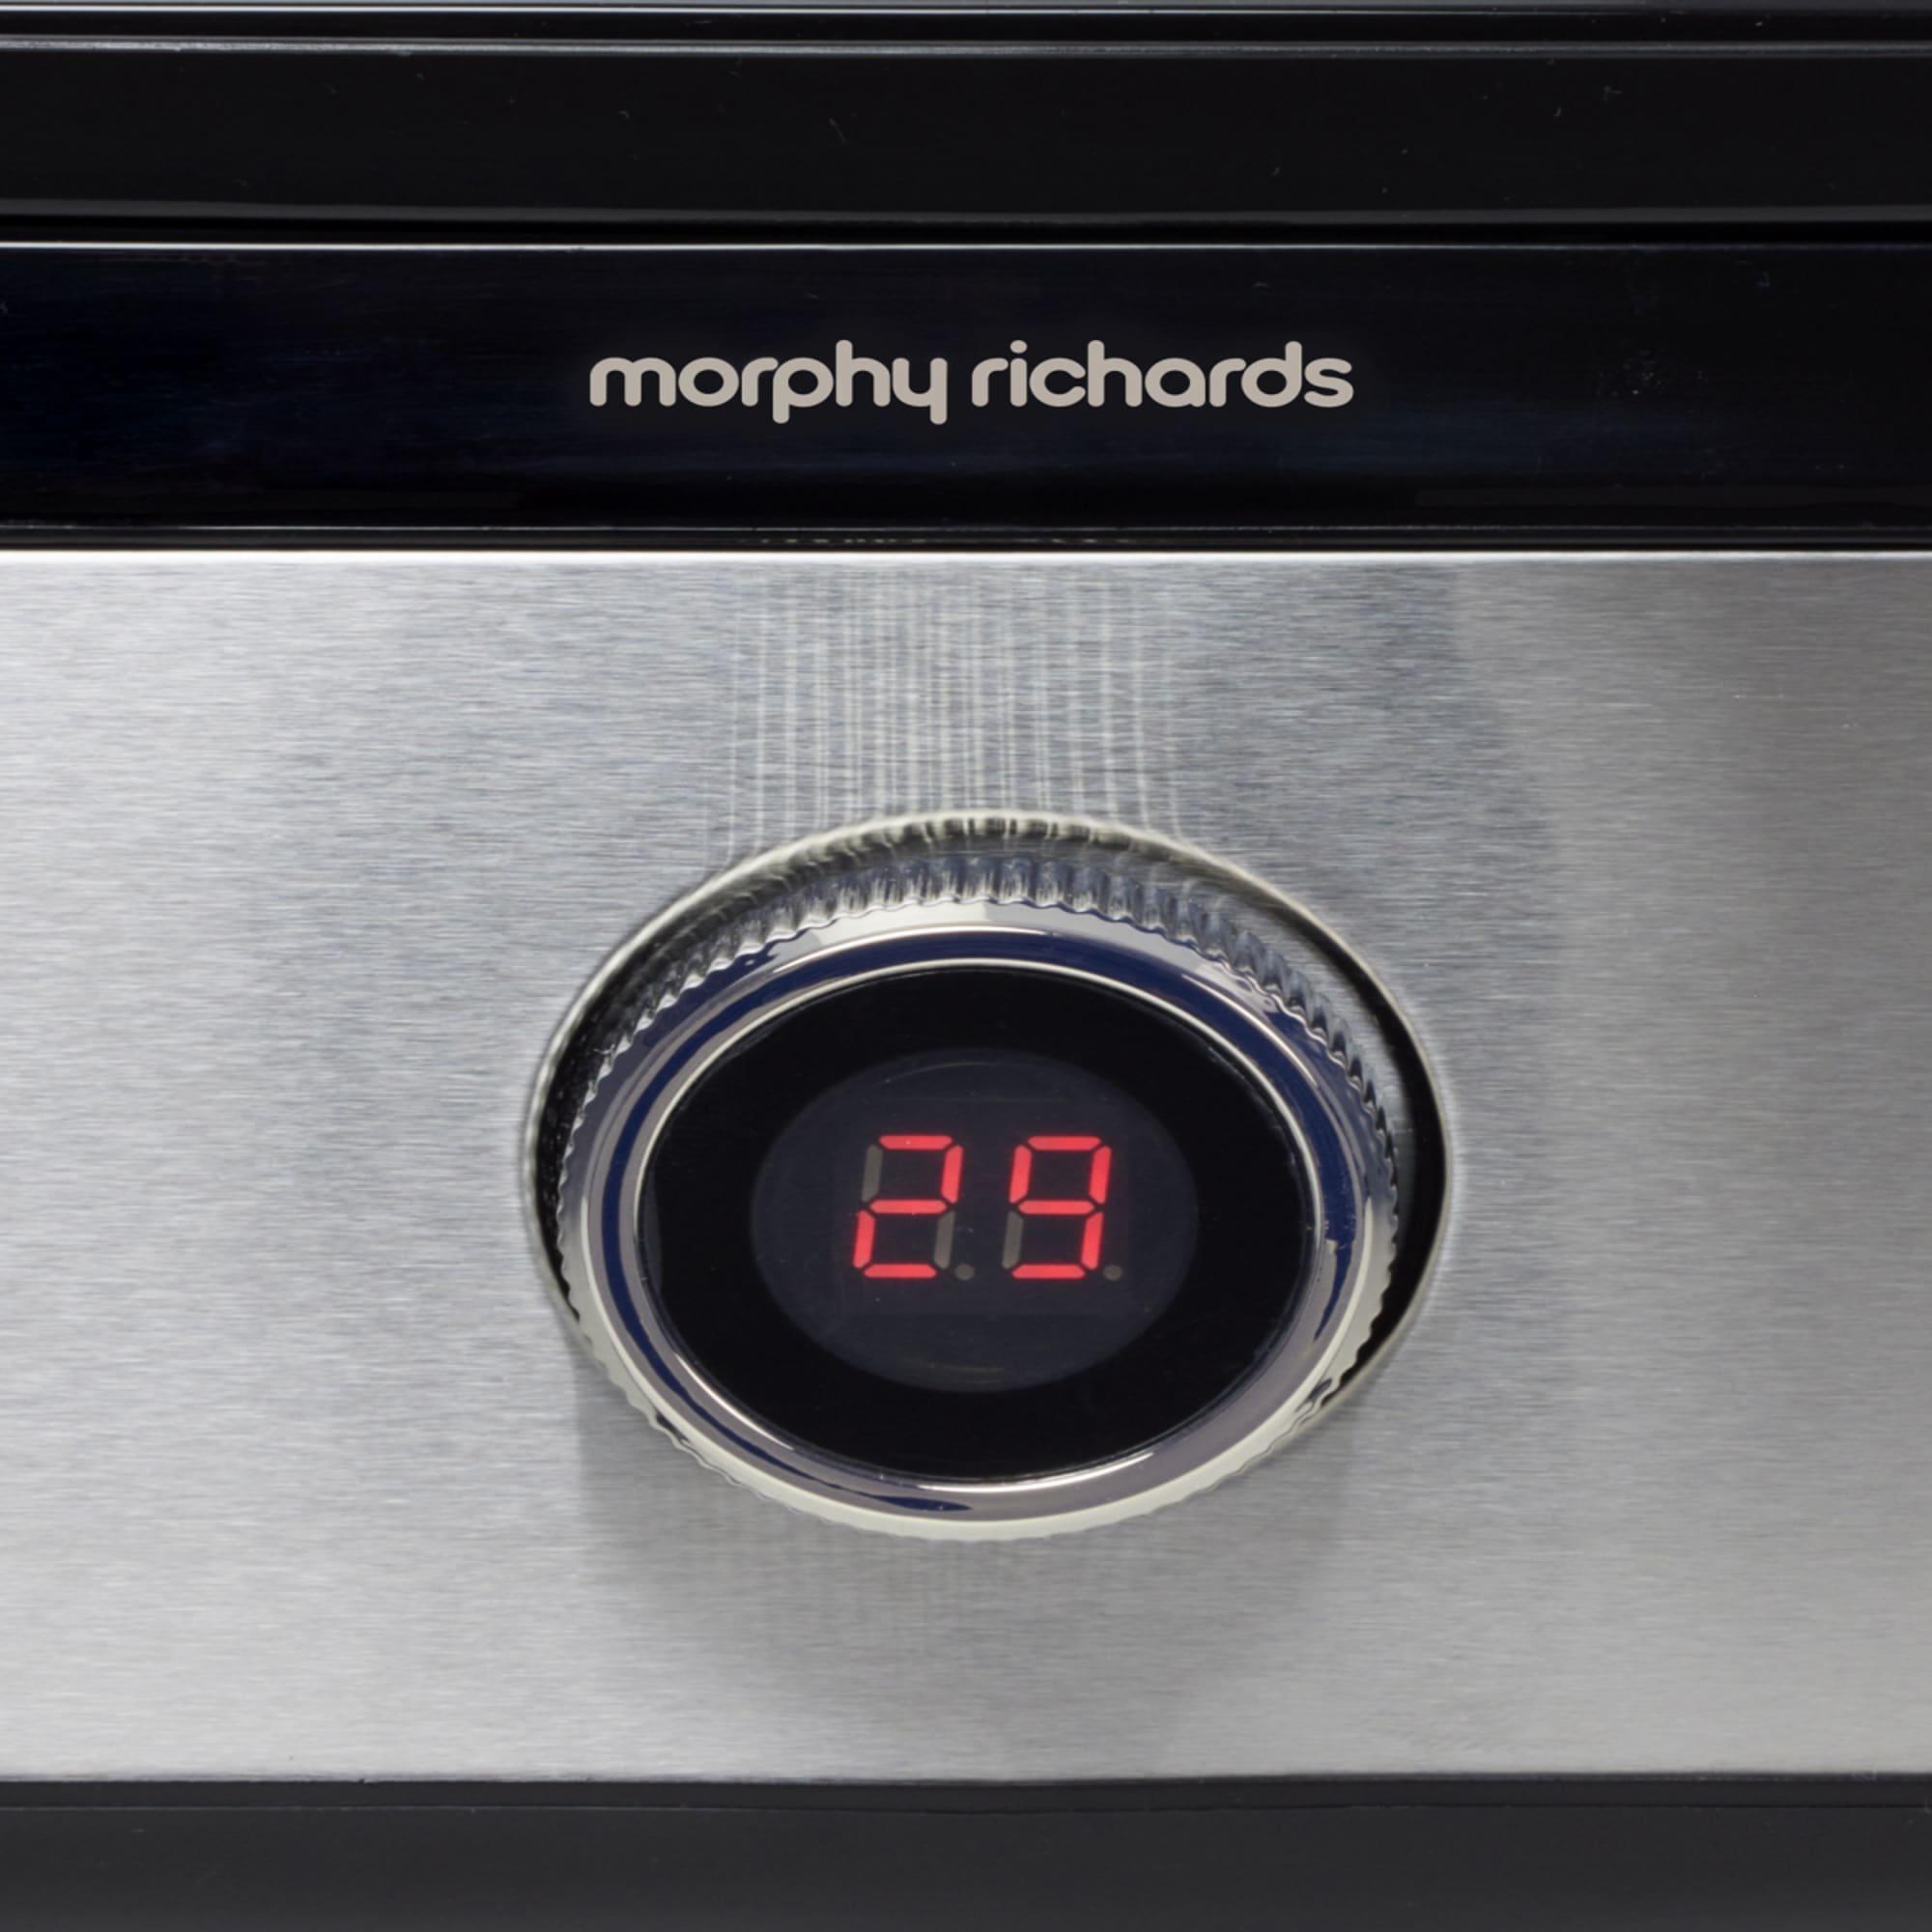 Morphy Richards 3 Tier Digital Food Steamer Image 5